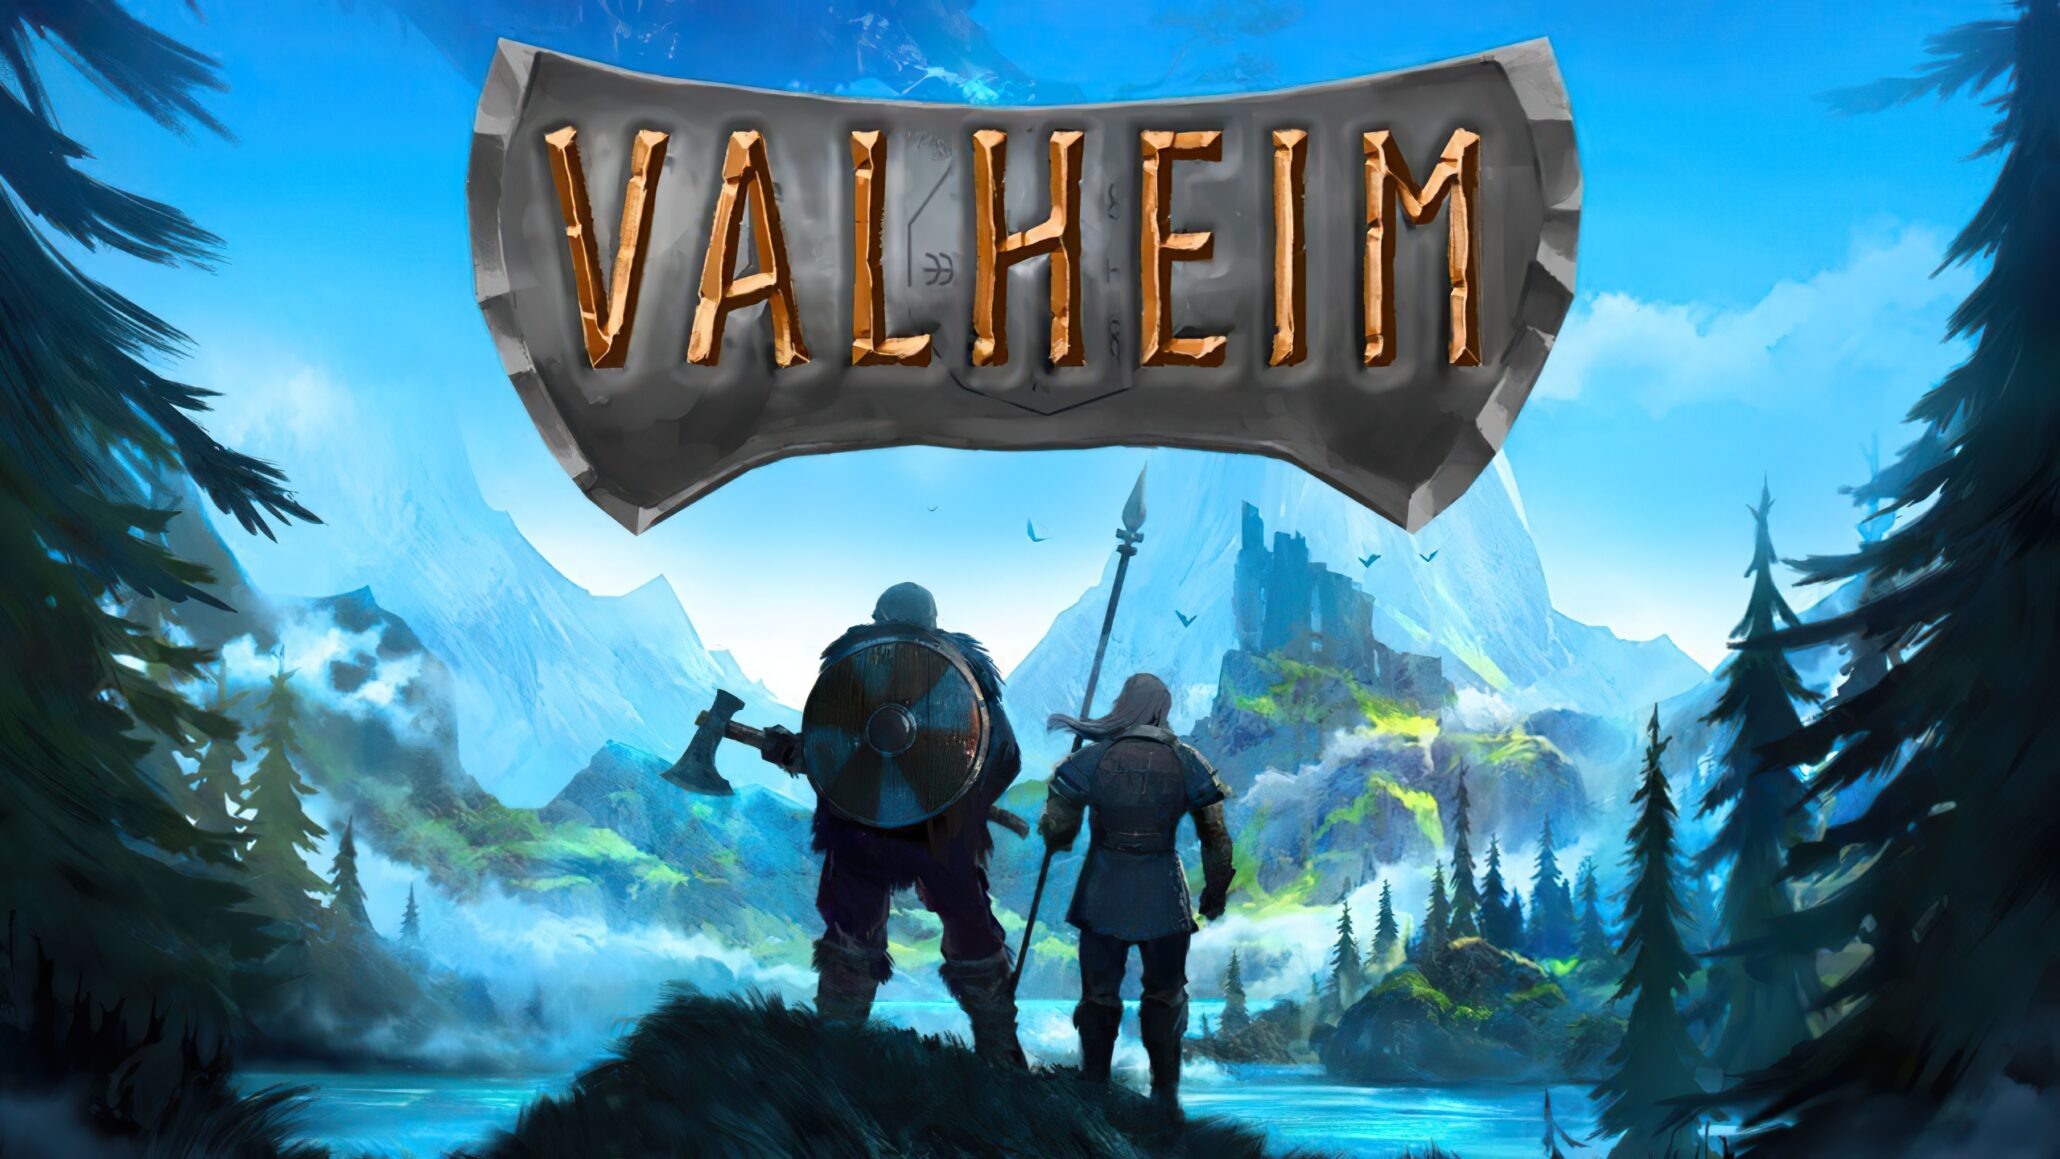 Is Valheim still popular?